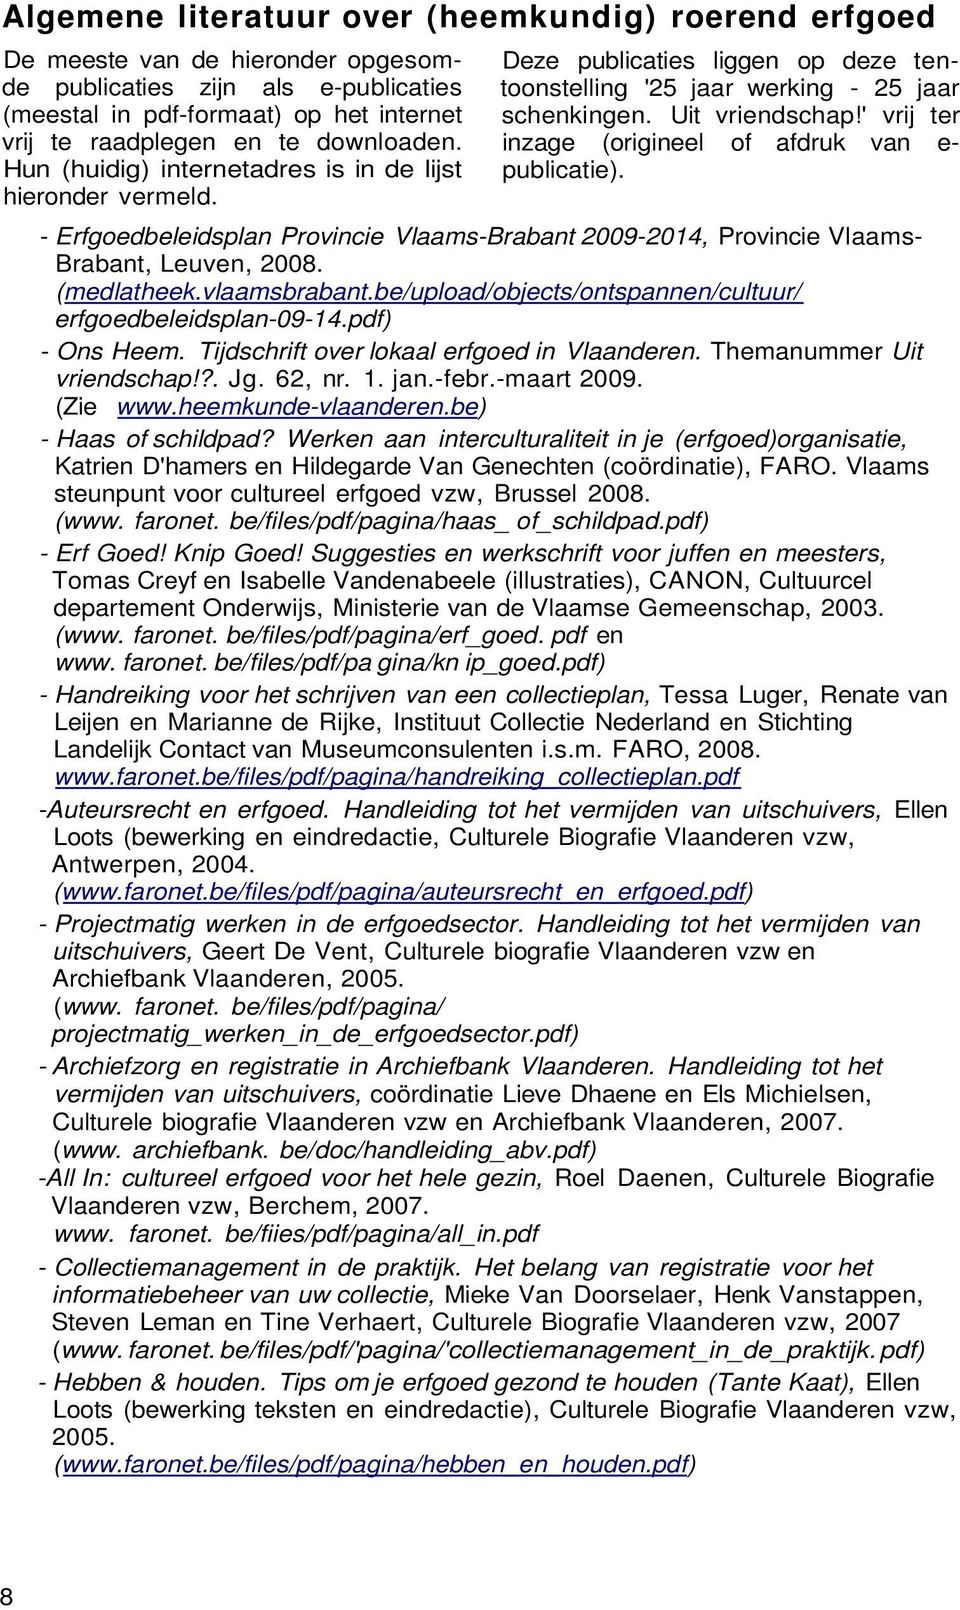 ' vrij ter inzage (origineel of afdruk van e- publicatie). - Erfgoedbeleidsplan Provincie Vlaams-Brabant 2009-2014, Provincie Vlaams- Brabant, Leuven, 2008. (medlatheek.vlaamsbrabant.